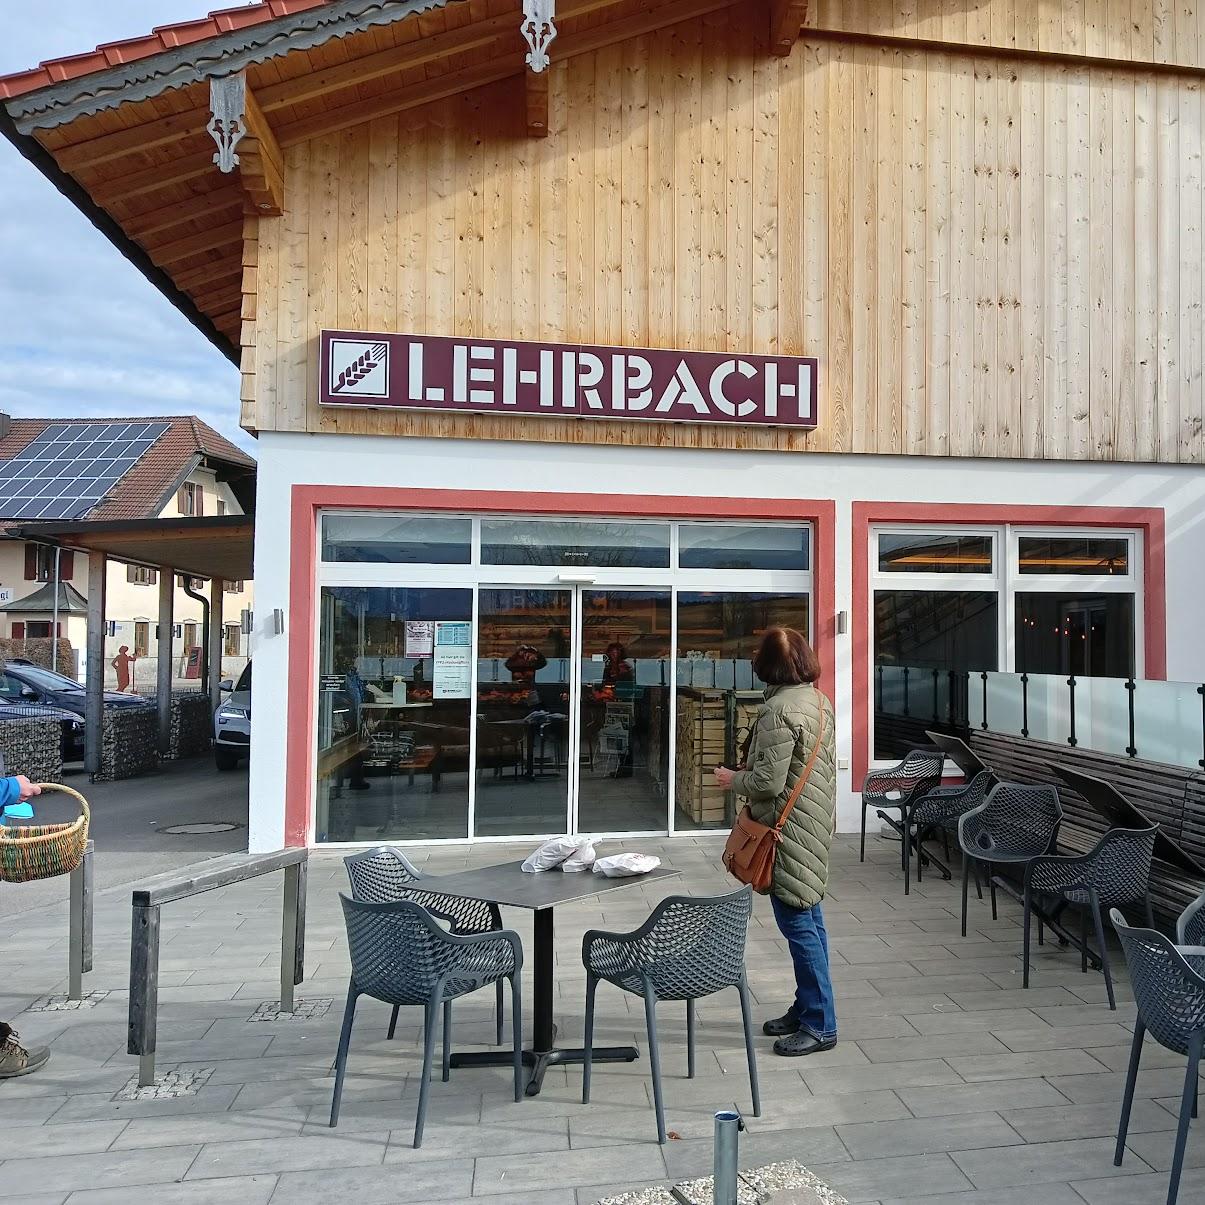 Restaurant "Brothaus Lehrbach" in Grabenstätt